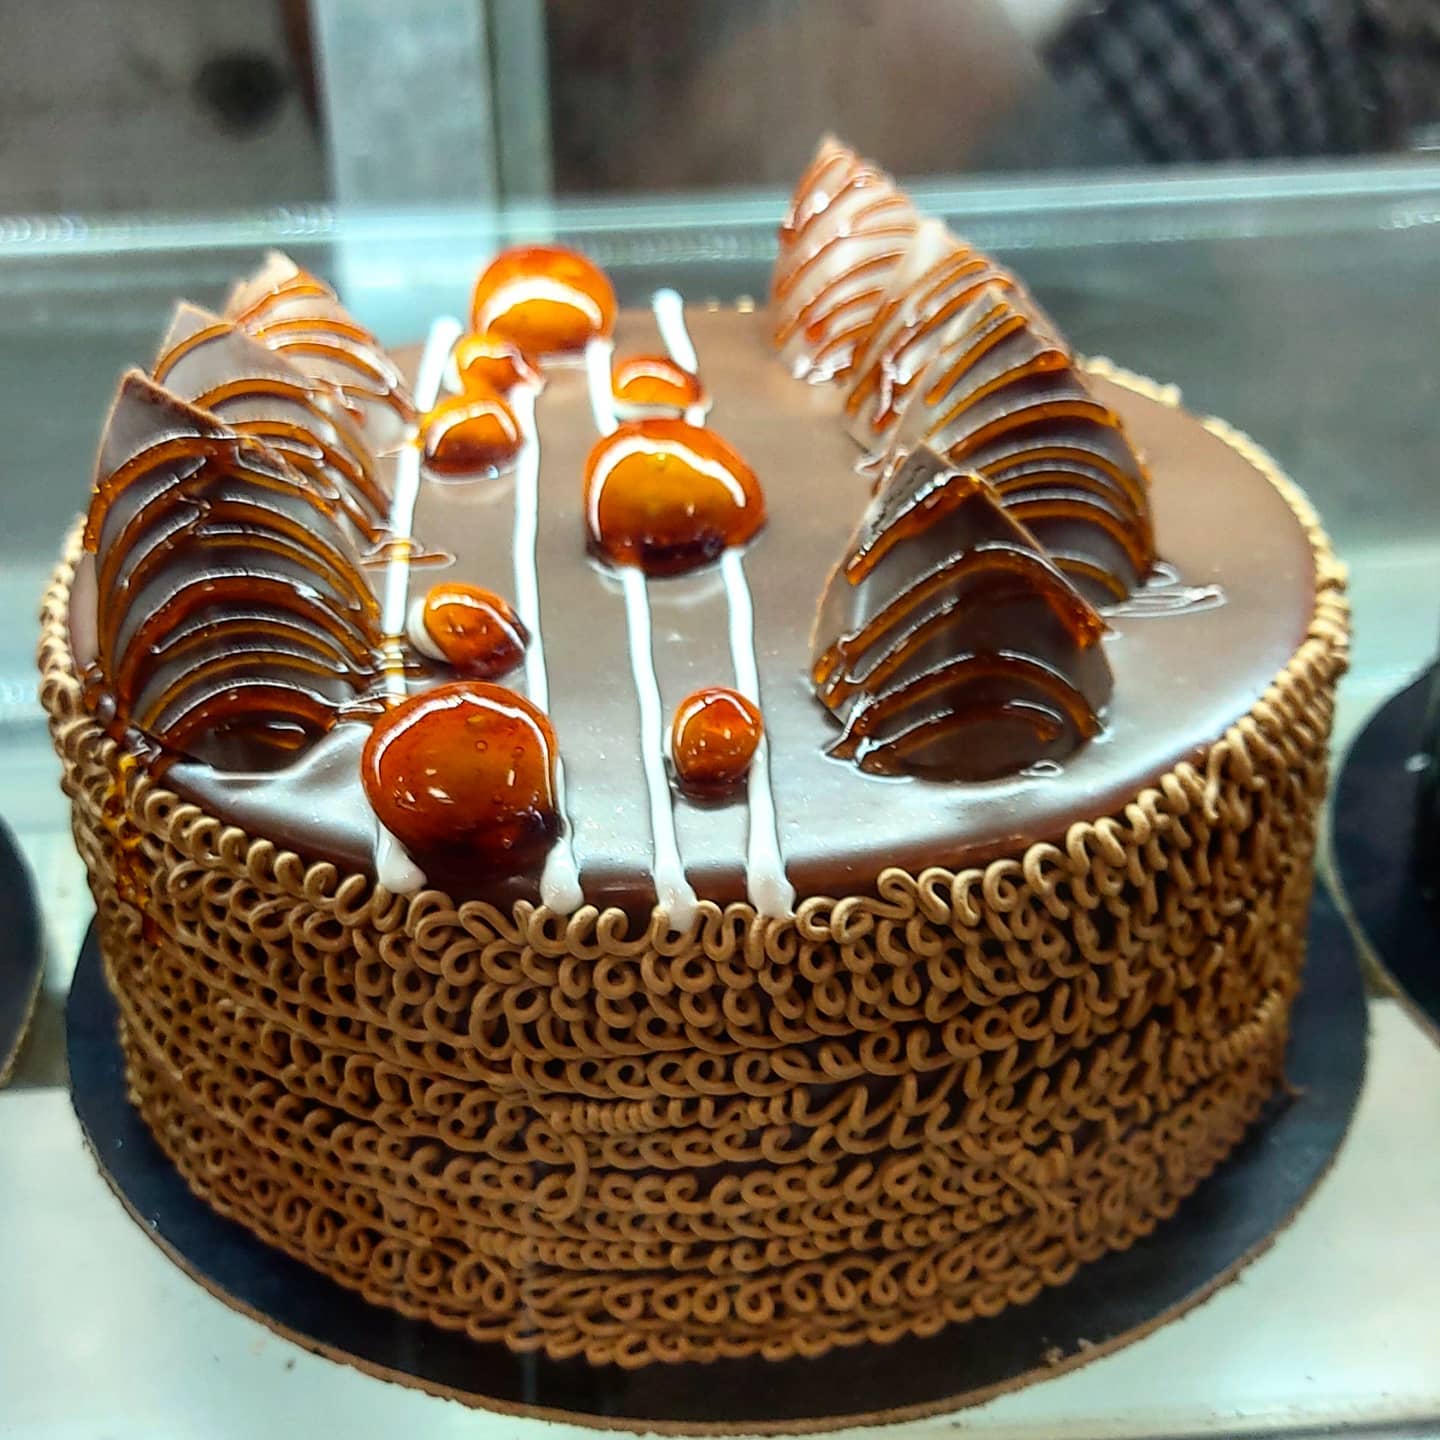 Jyoti Cake Shop, Powai, Mumbai | Zomato